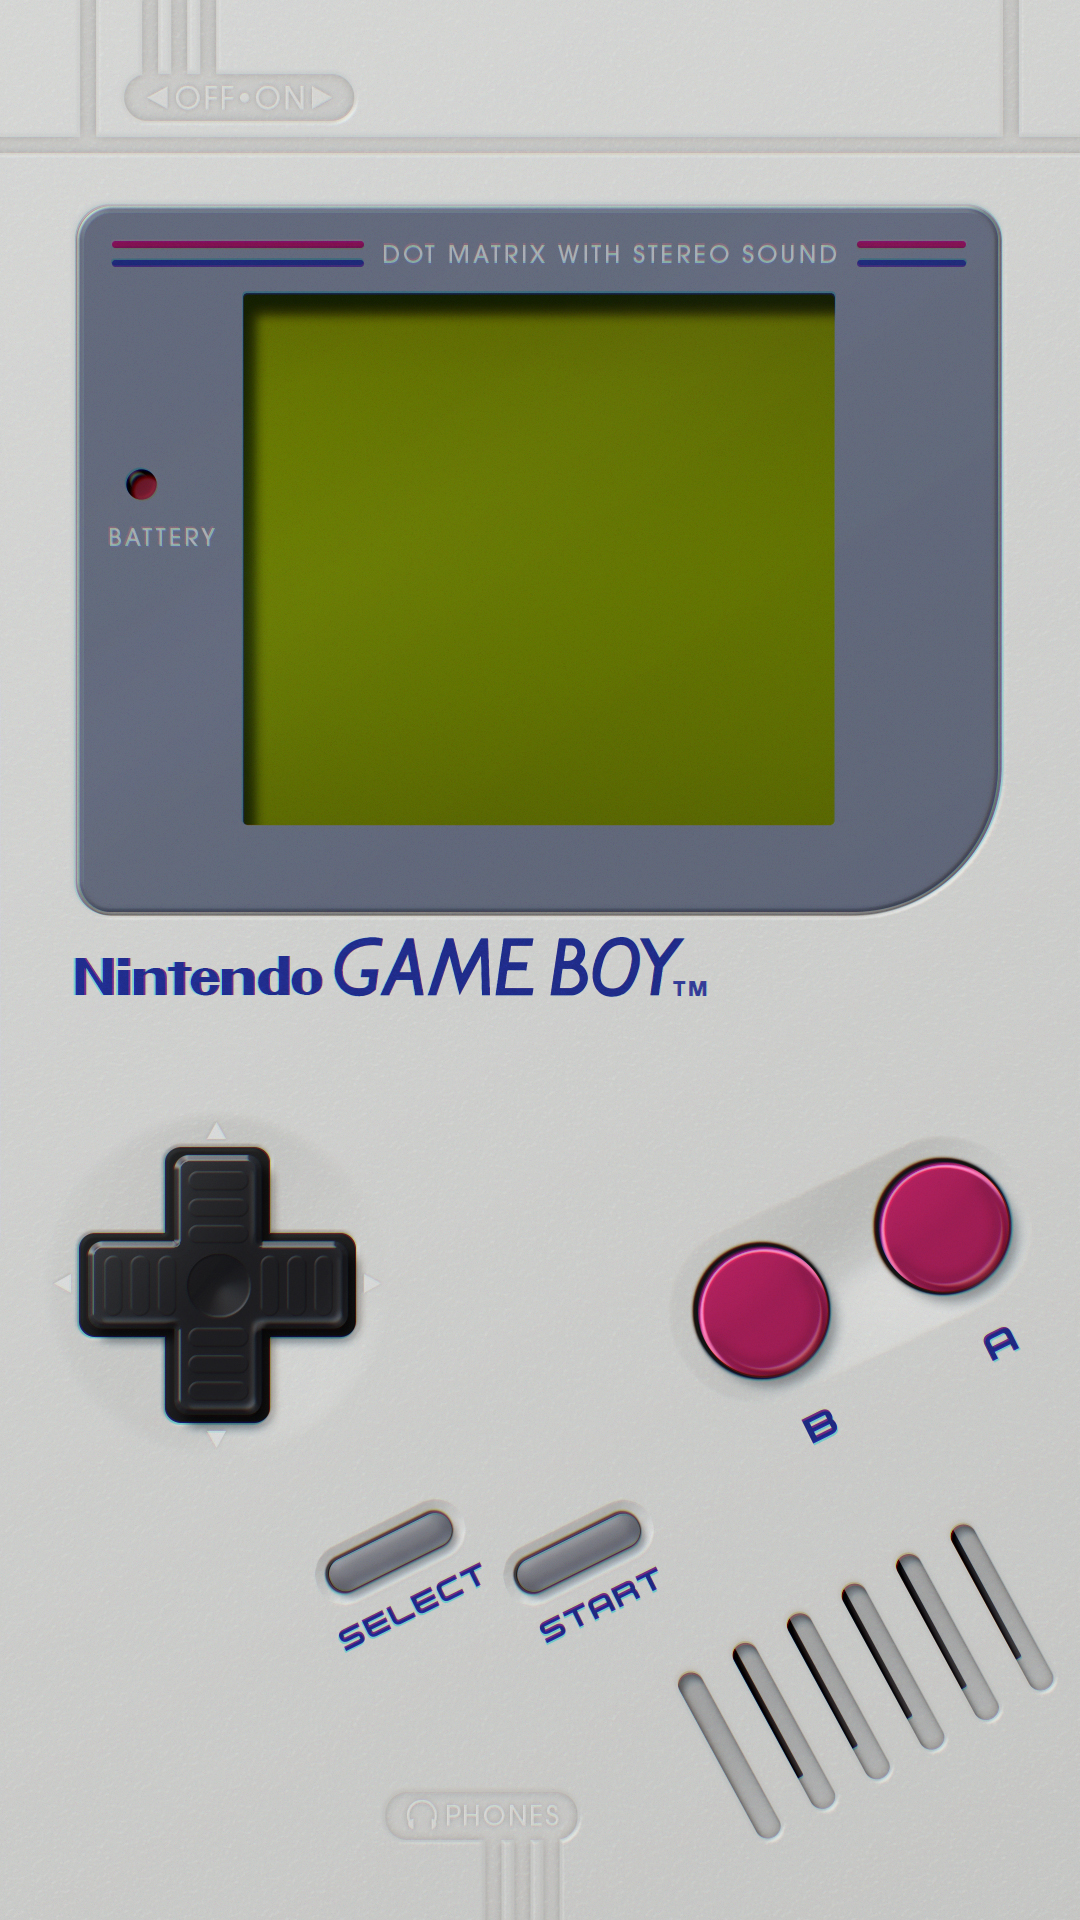 Bạn là fan của trò chơi tay cầm đình đám Game Boy? Hãy tìm hiểu thêm về thiết bị này và khám phá những game đáng nhớ từ thời cổ đại. Một trải nghiệm chơi game đích thực đang chờ đón bạn.